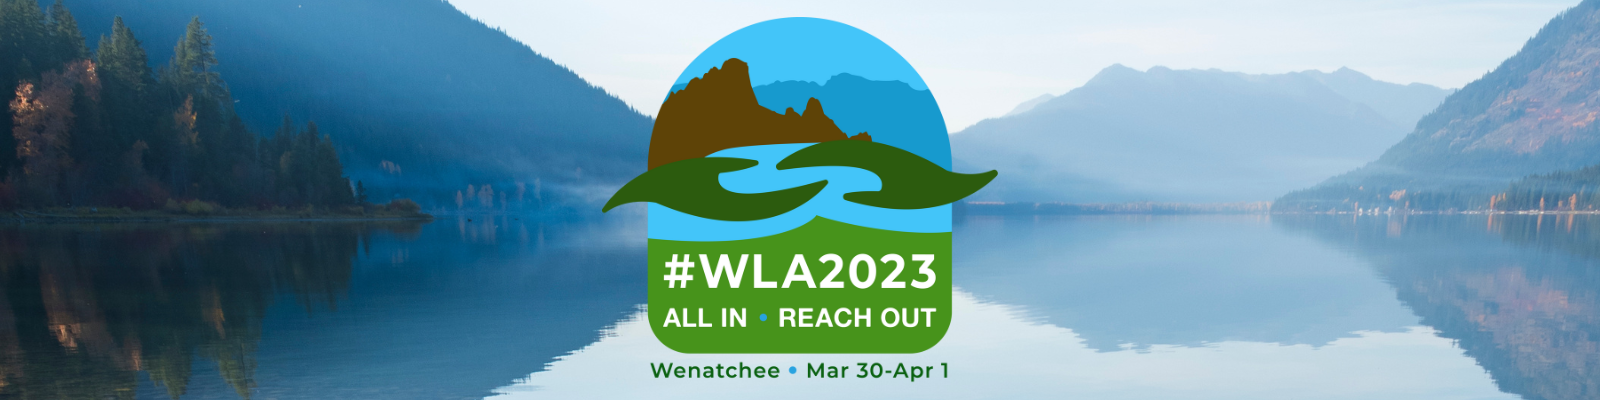 WLA2023 logo on lake background